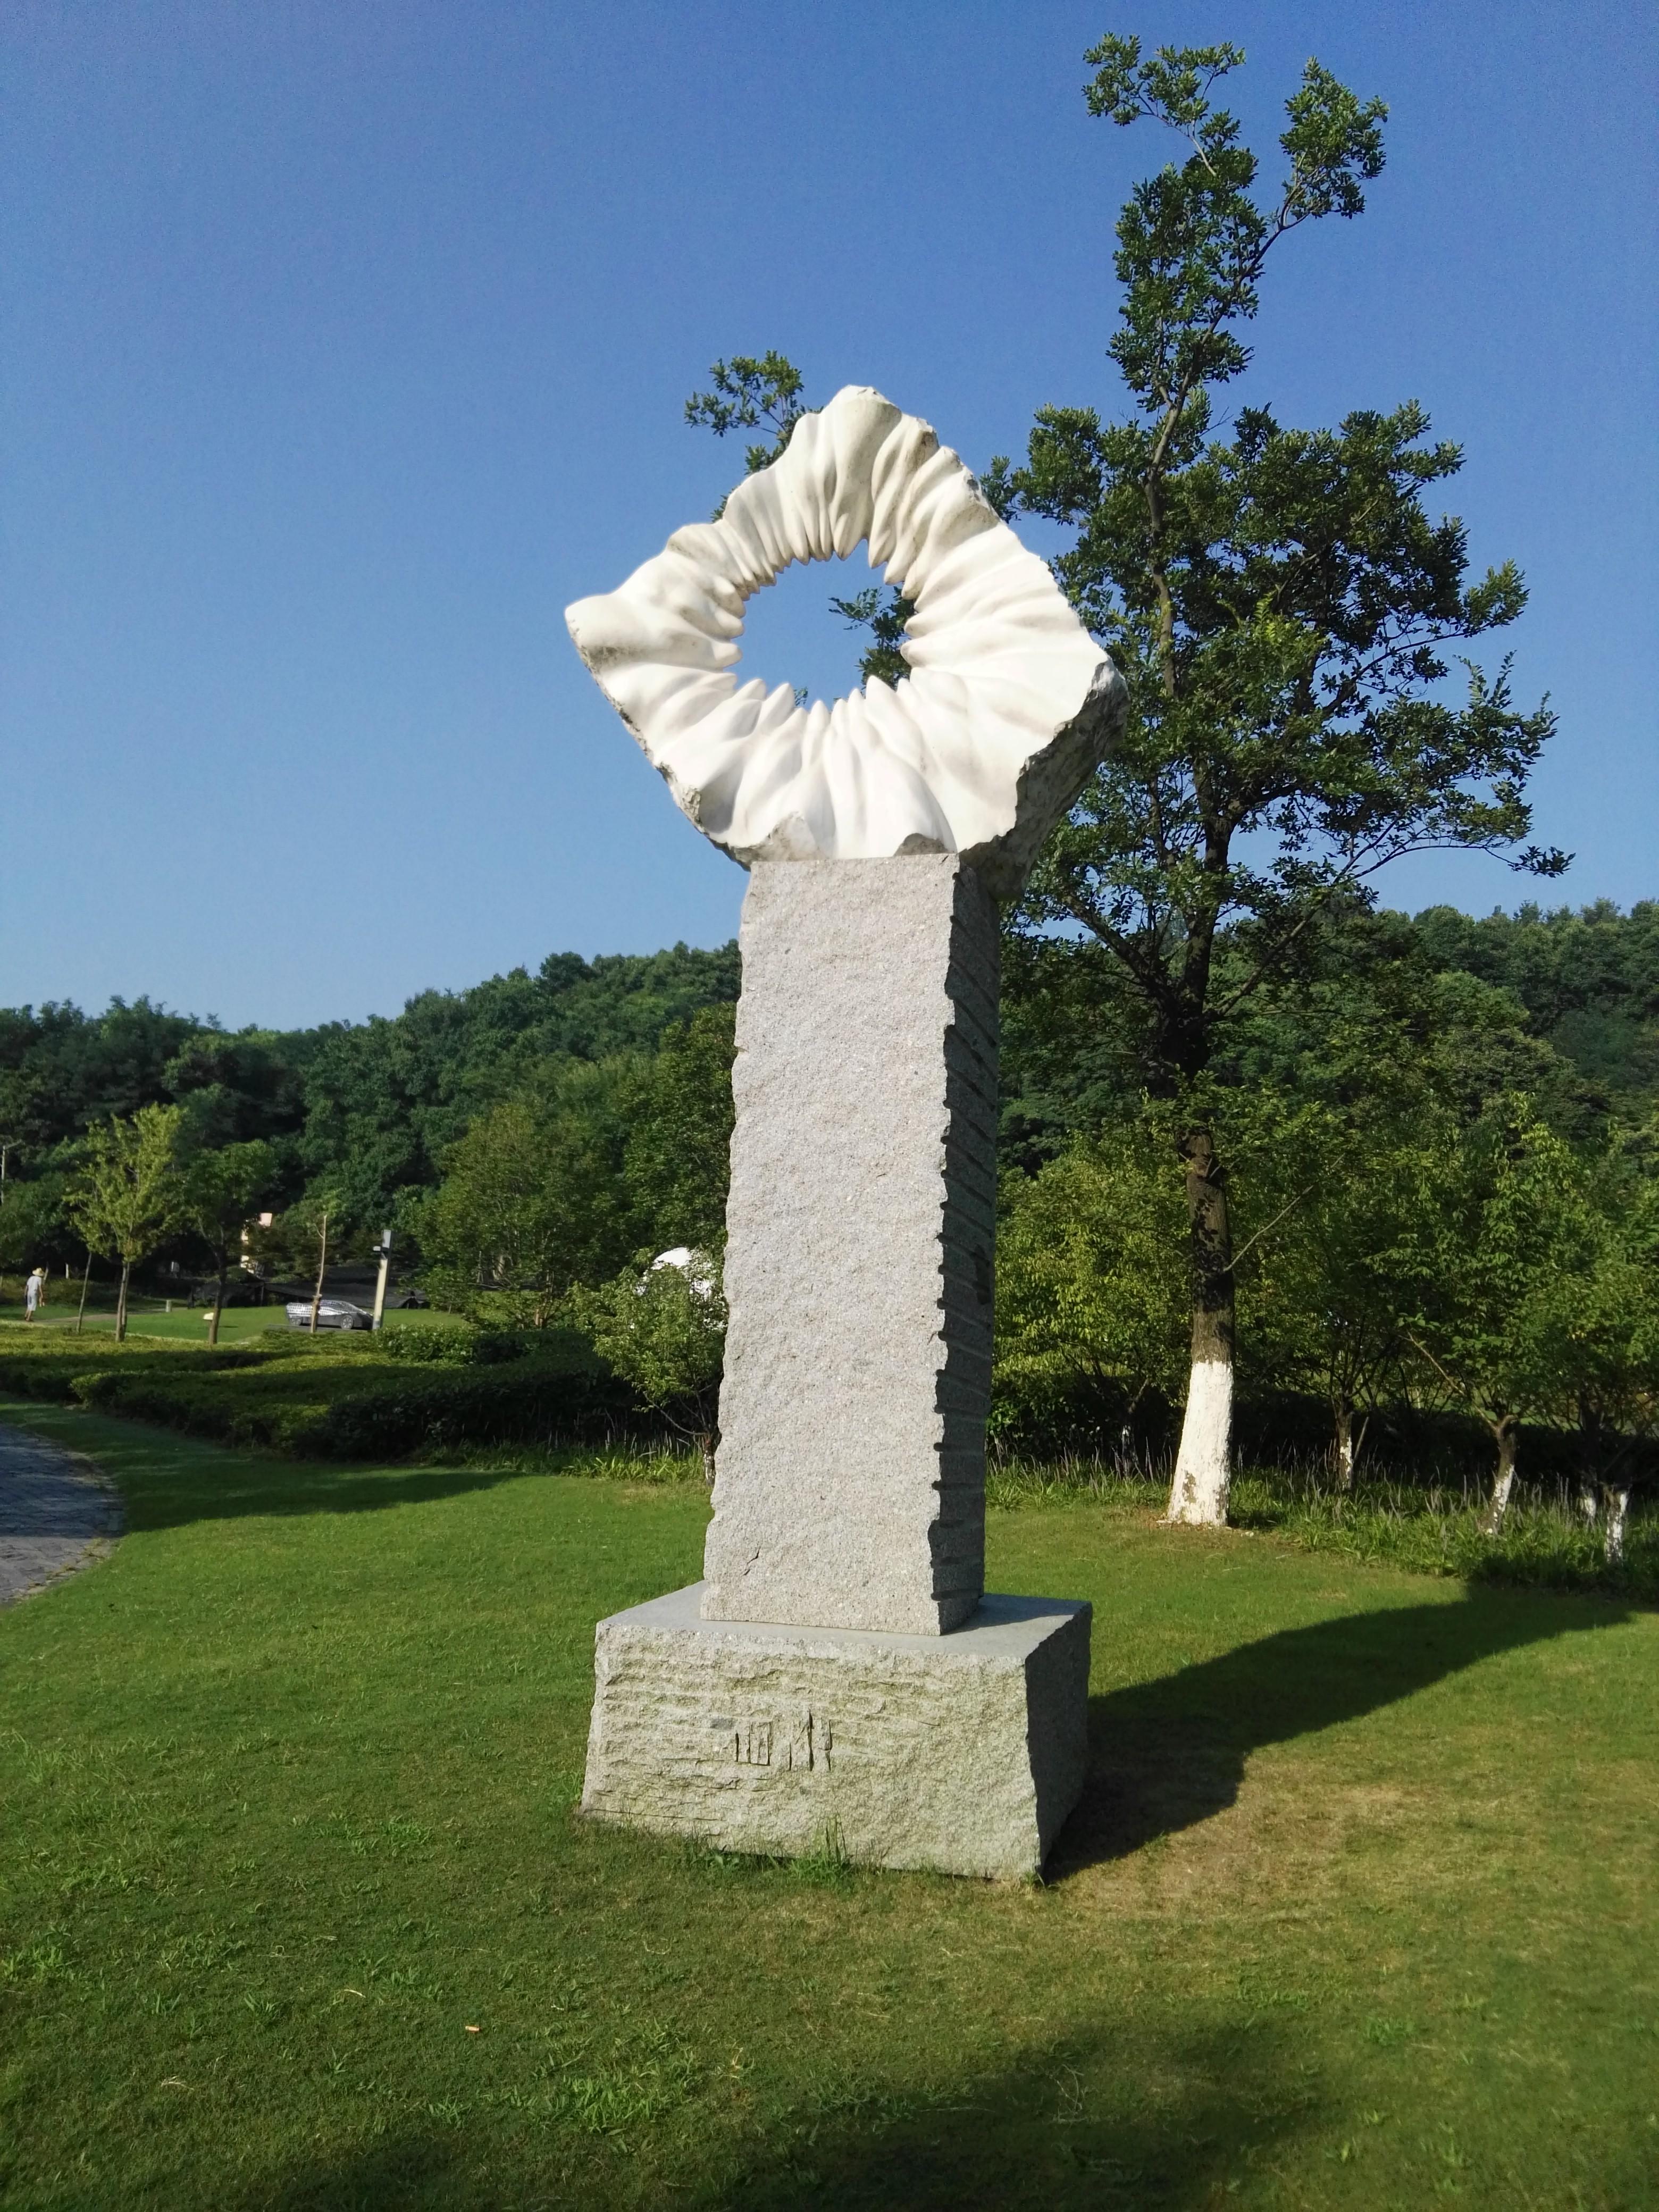 中国有座雕塑公园在安徽芜湖